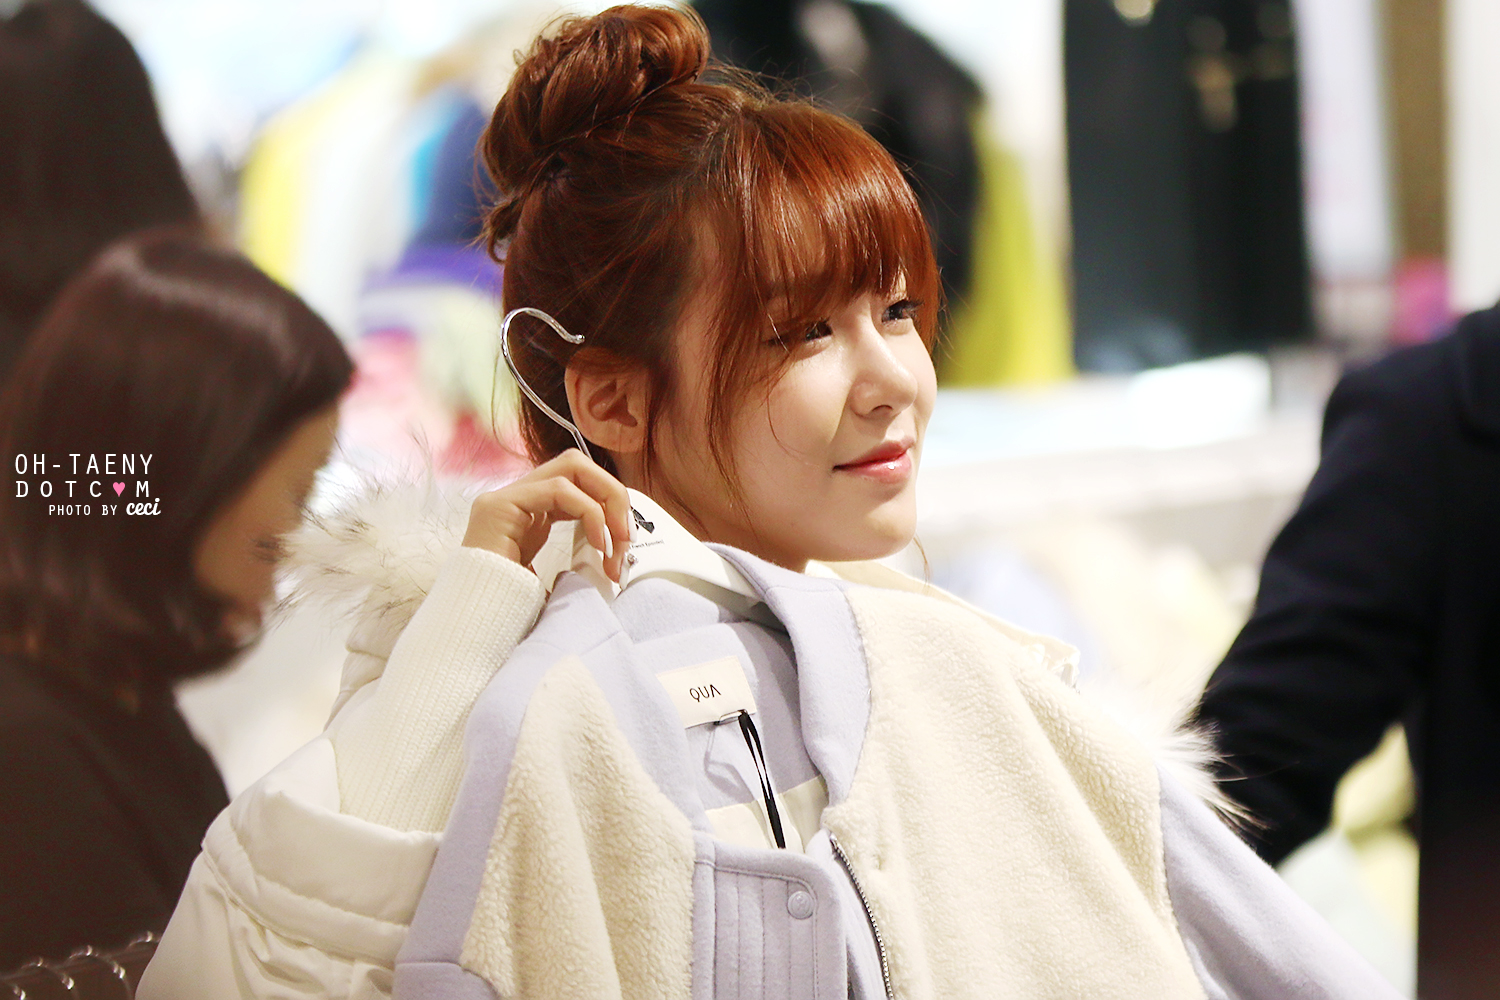 [PIC][28-11-2013]Tiffany ghé thăm cửa hàng "QUA" ở Hyundai Department Store vào trưa nay - Page 3 254A134E529B241E06ACDA